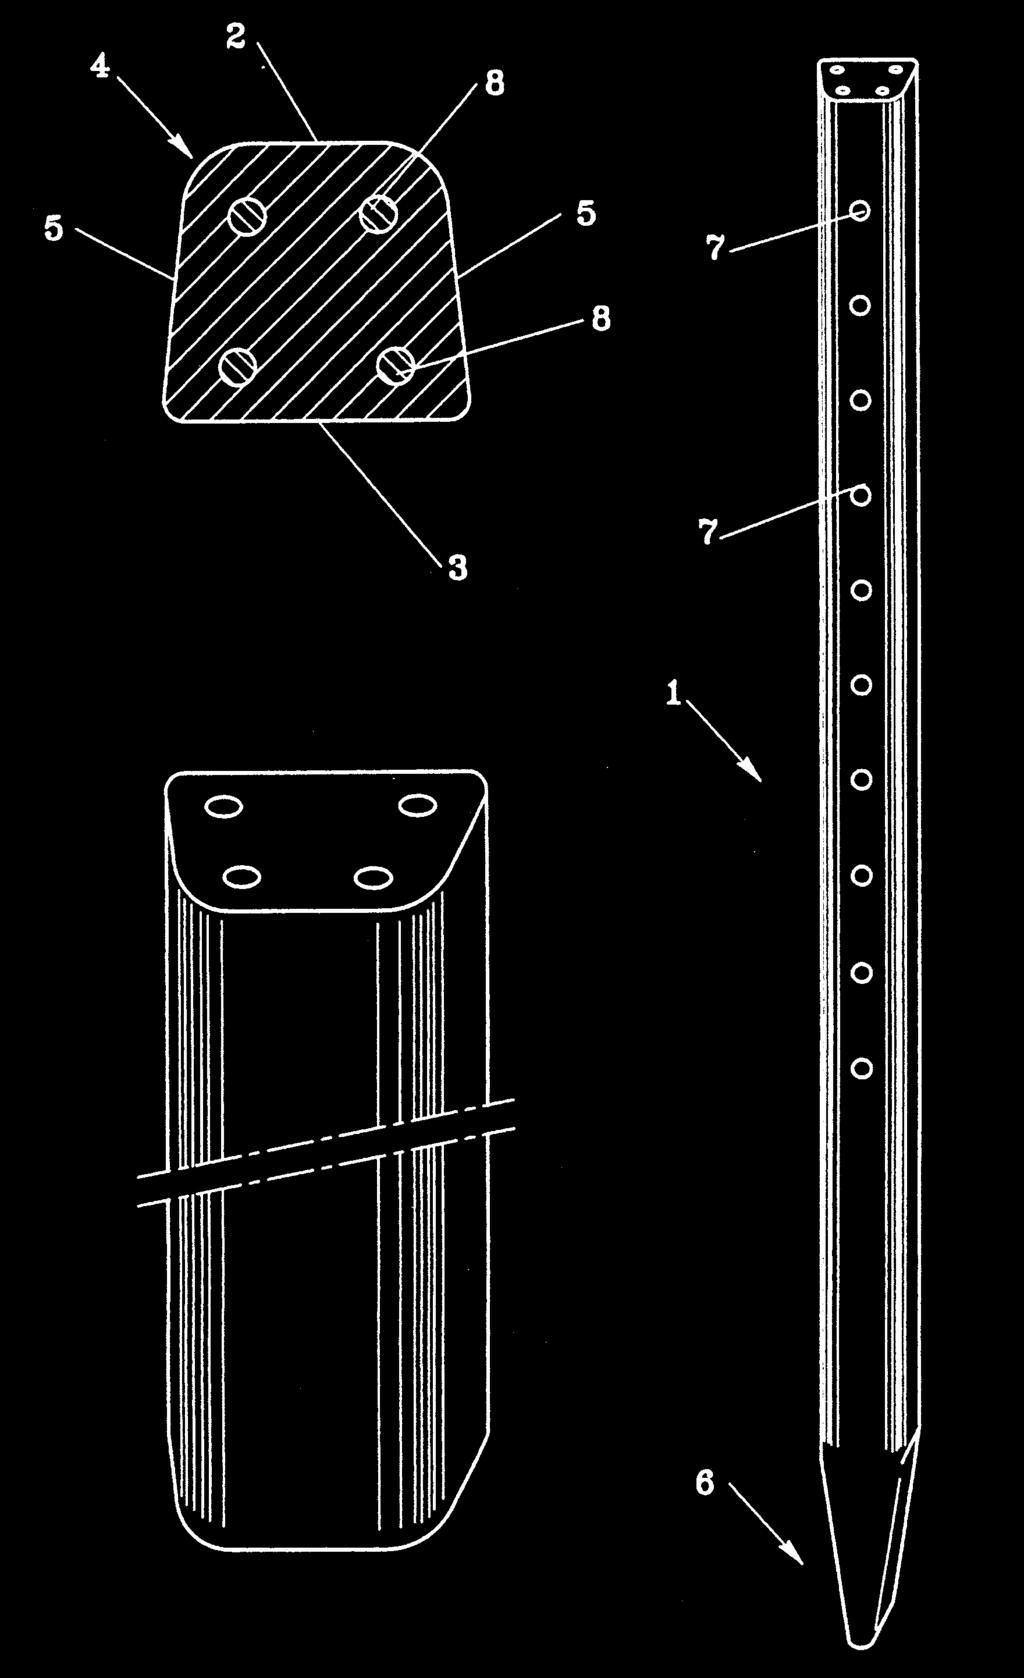 Tale invenzione prevede la realizzazione di pali perfettamente lisci, con due o più spigoli arrotondati, in modo di non arrecare problemi ai bracci meccanici durante la fase di raccolta.